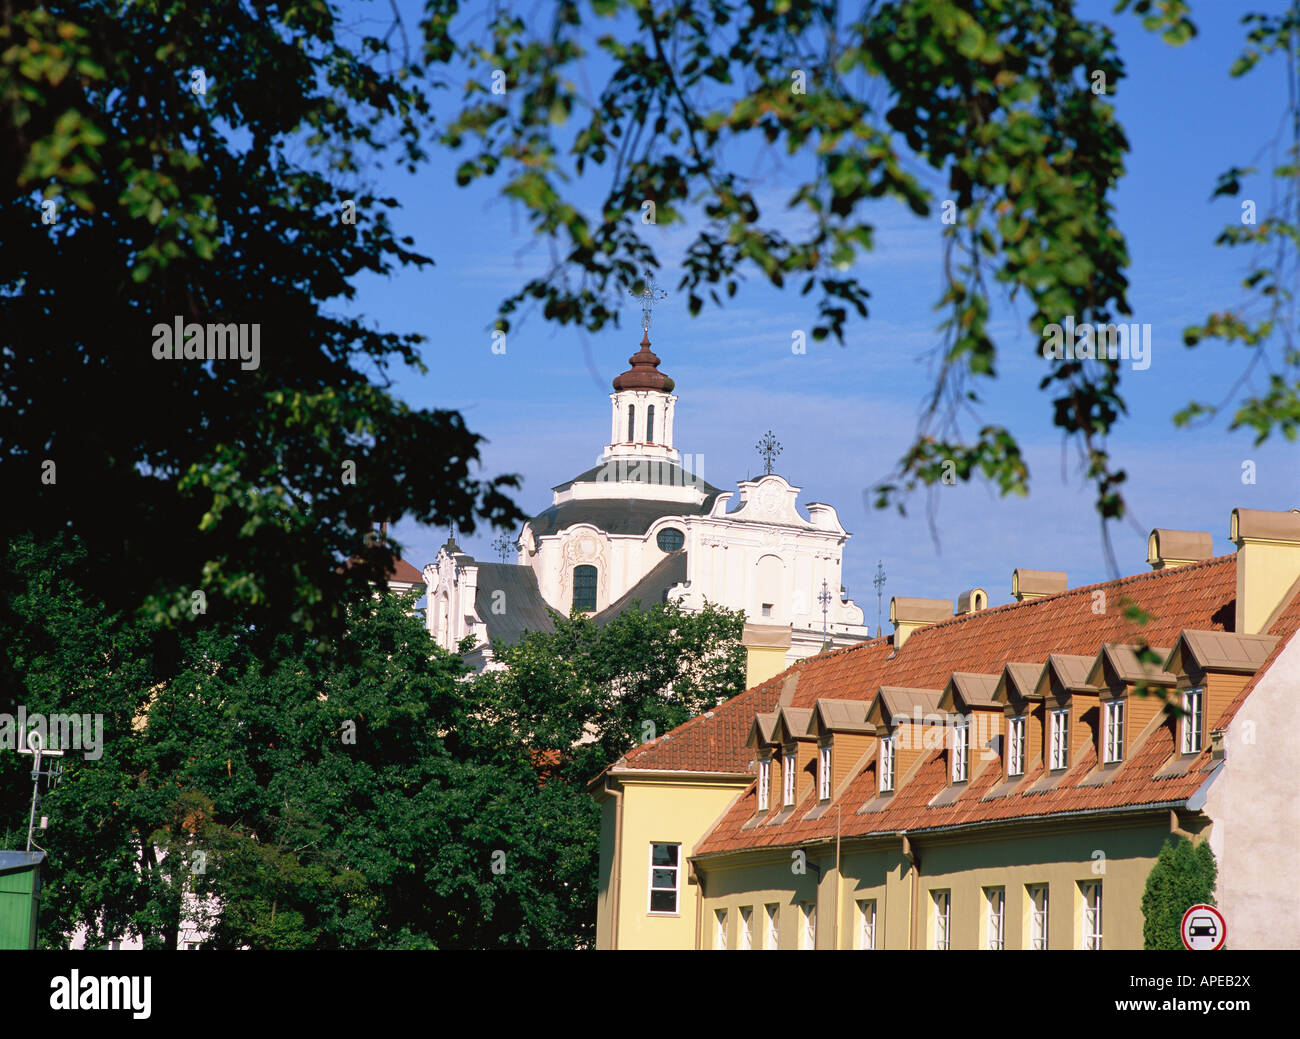 Russisch-orthodoxe Kirche, Heilige Mutter Gottes, Vilnius, Litauen Stockfoto